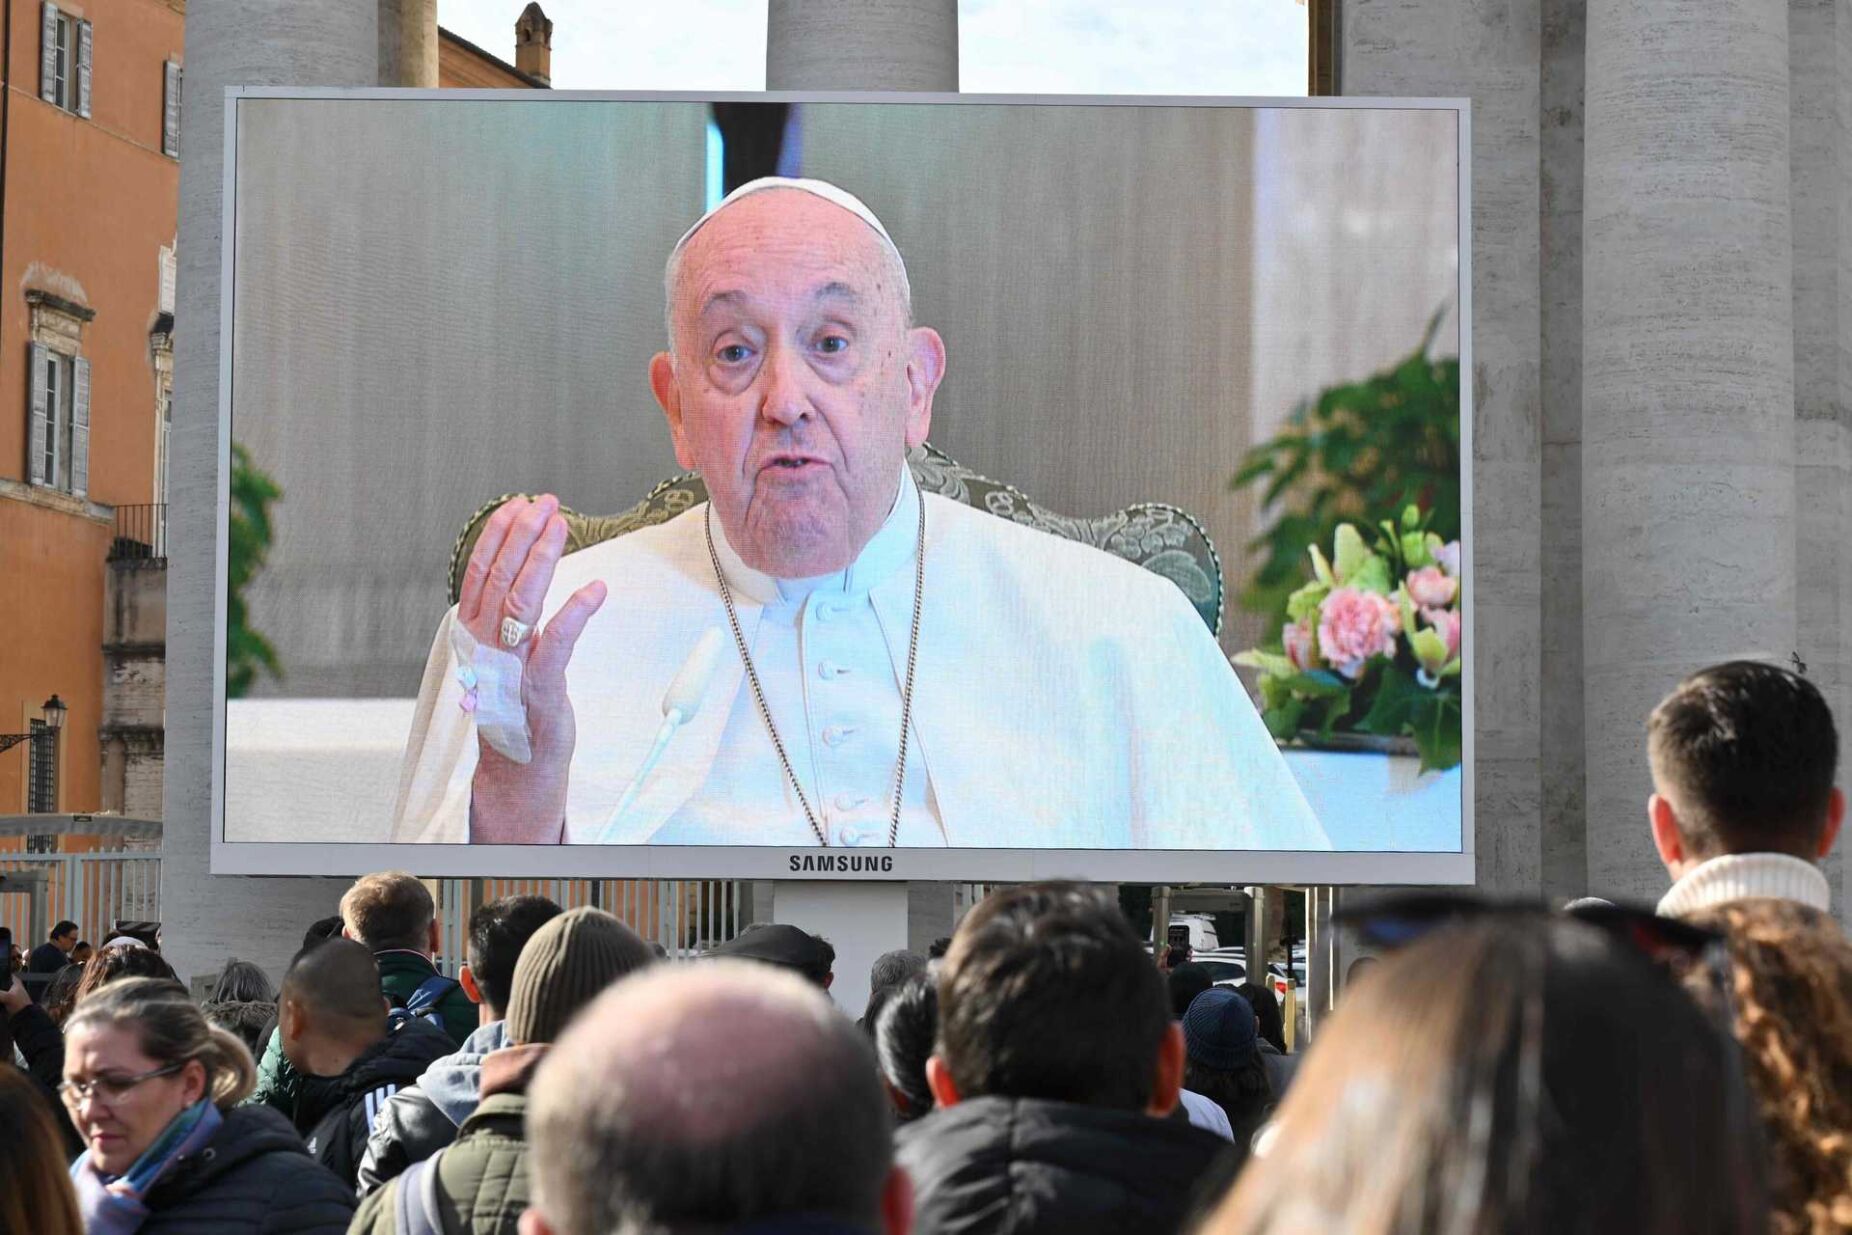 Papa Francisco cancela discurso em reunião com rabinos após